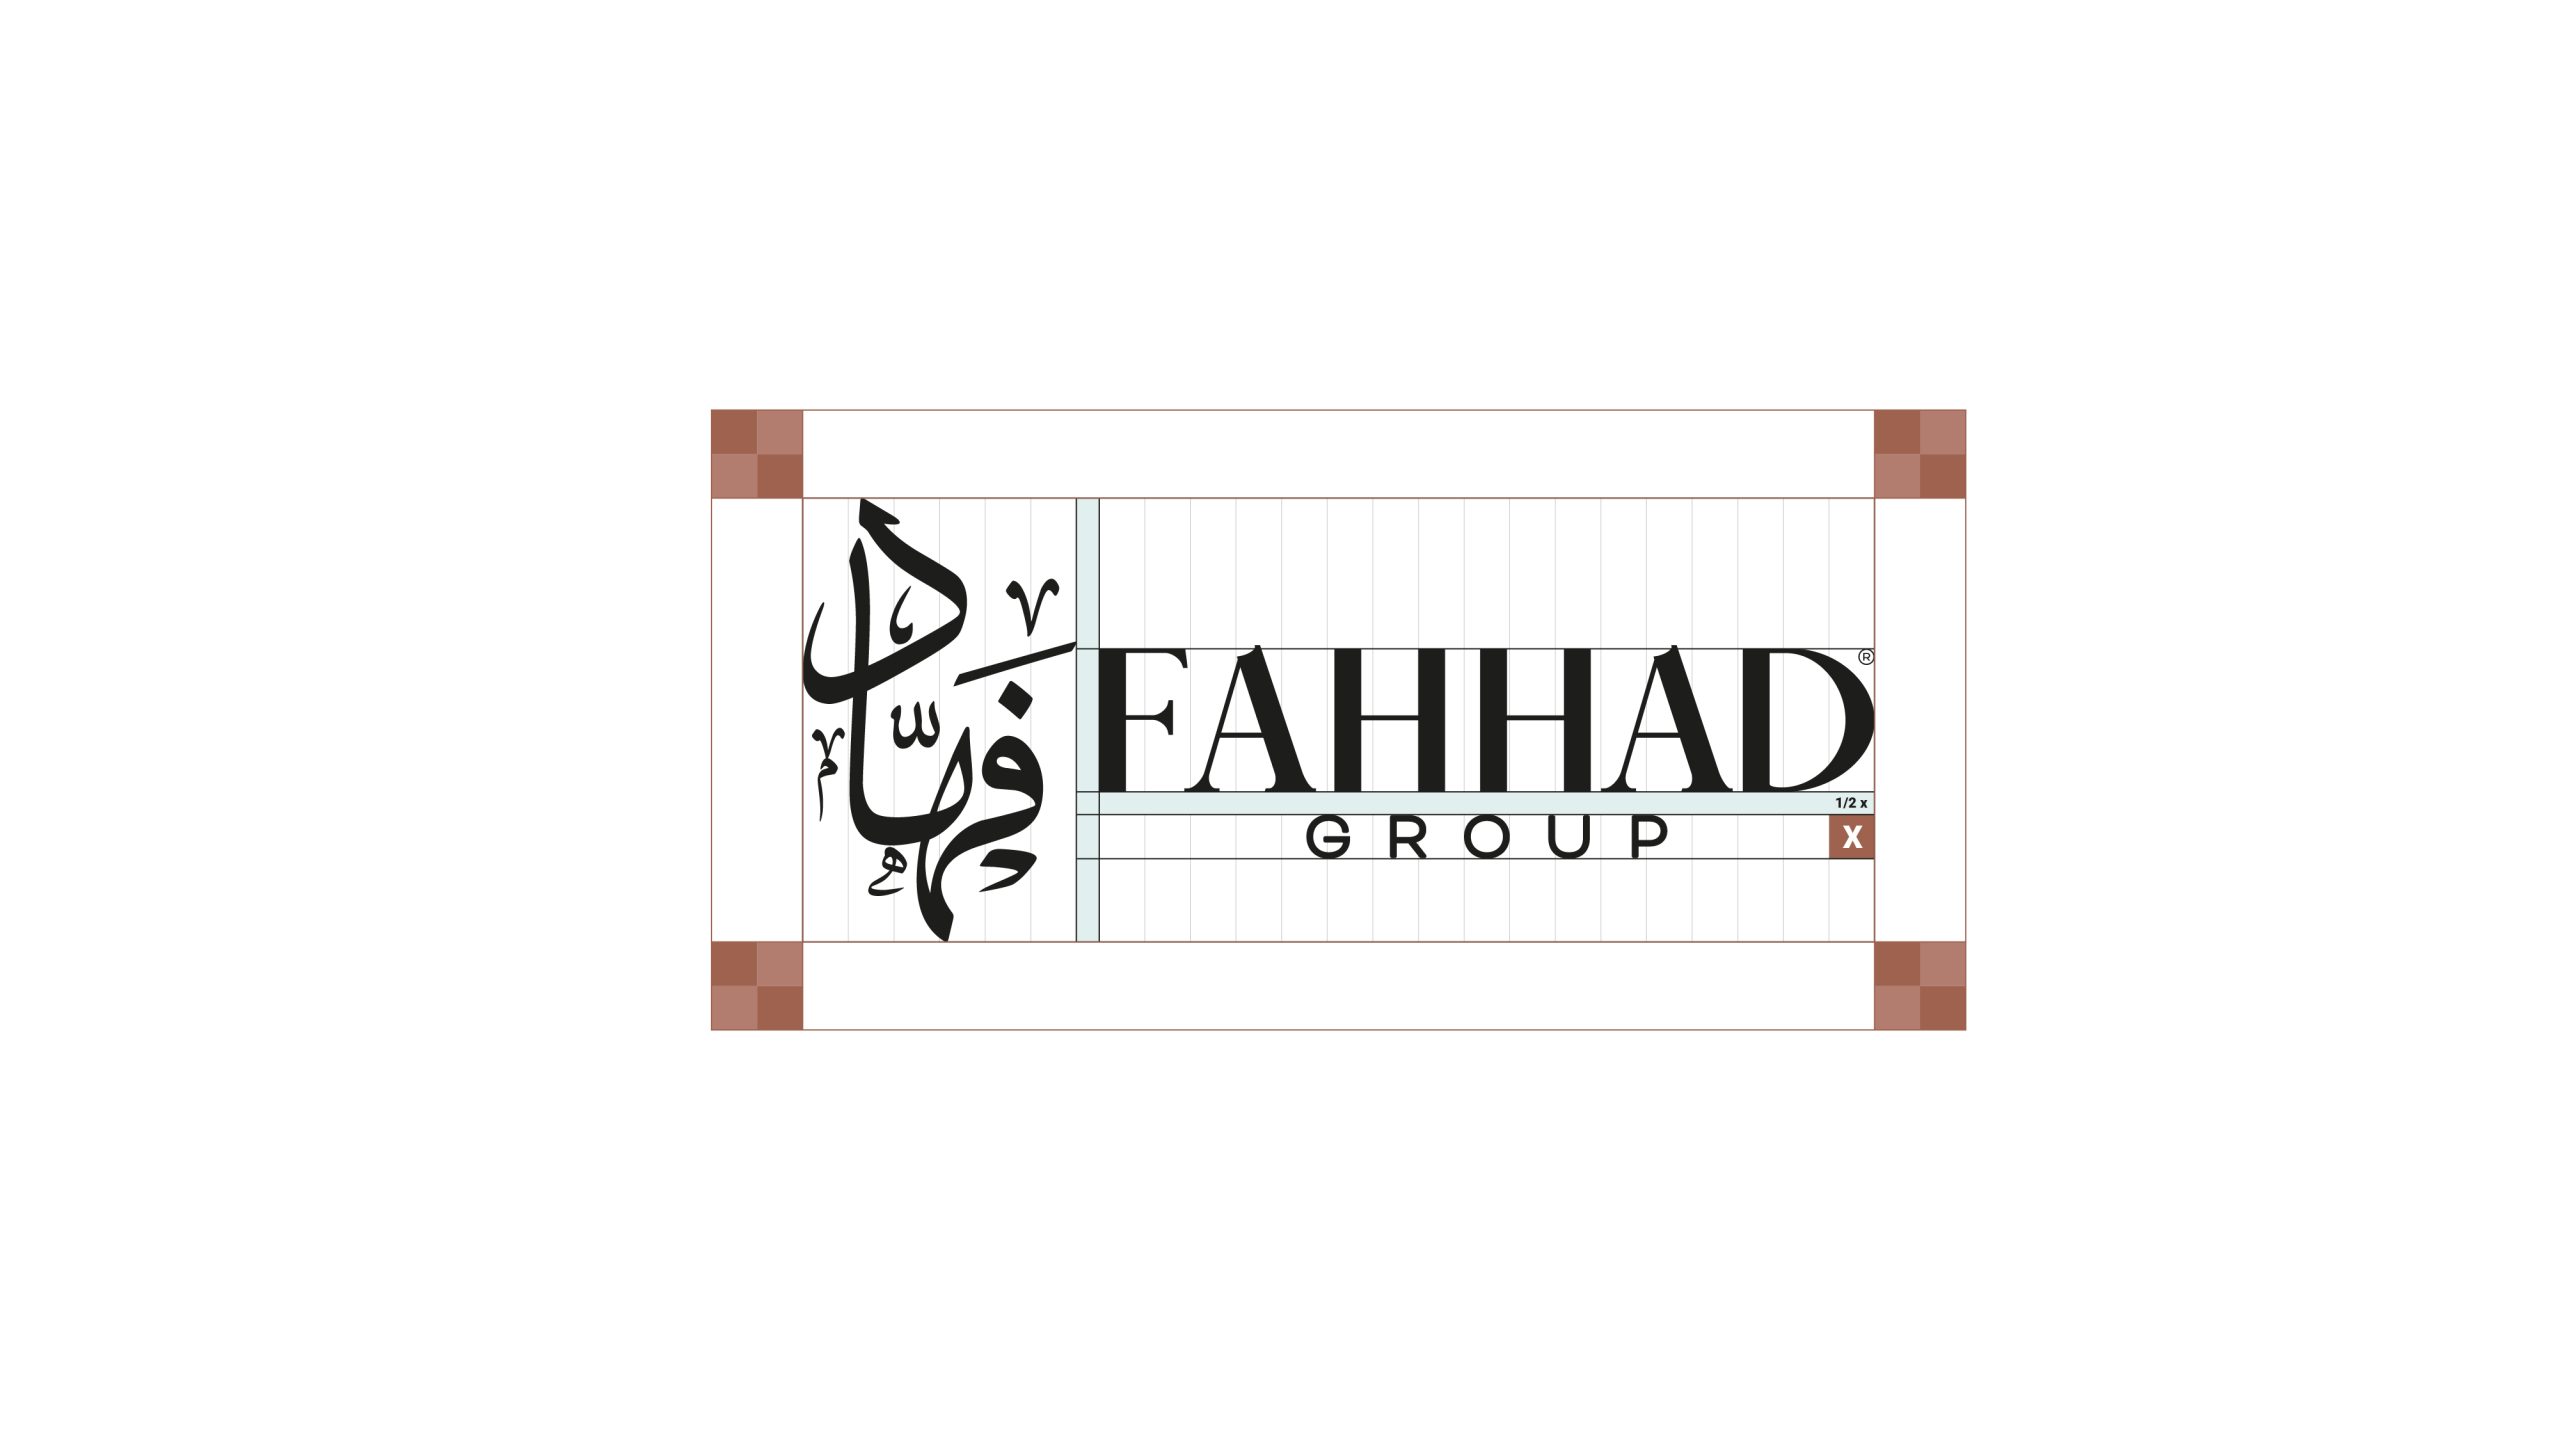 FAHHAD GROUP